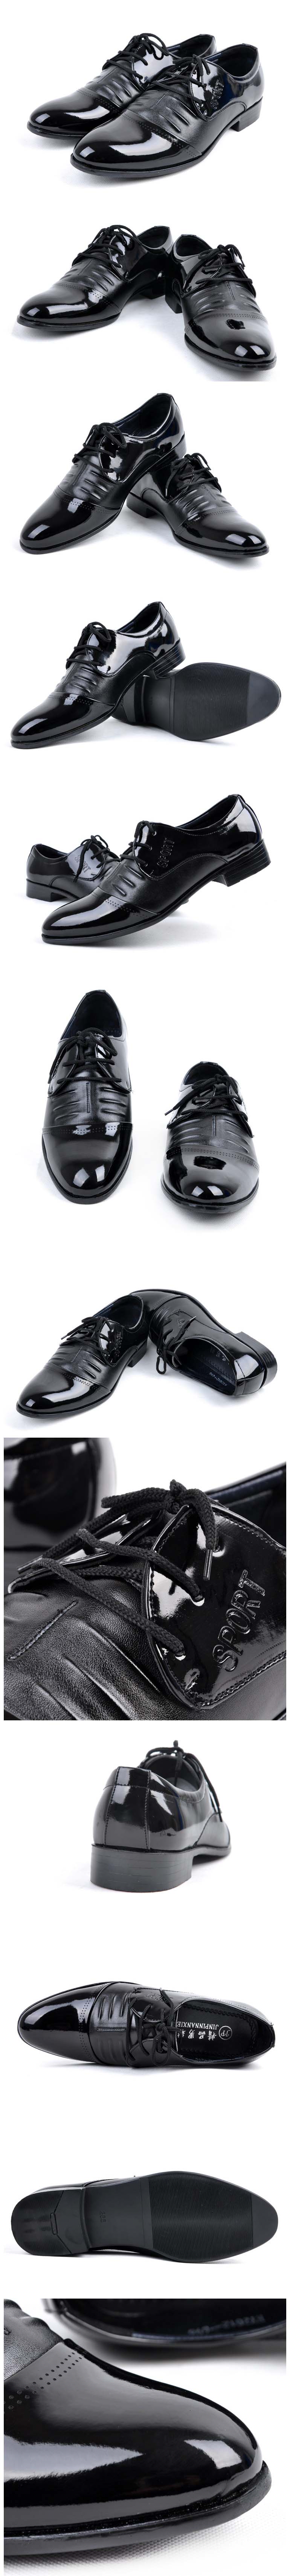 jual sepatu kerja pria import model terbaru dengan bahan kulit sintetis berkualitas tinggi sangat cocok untuk profesional yang bekerja dikantor